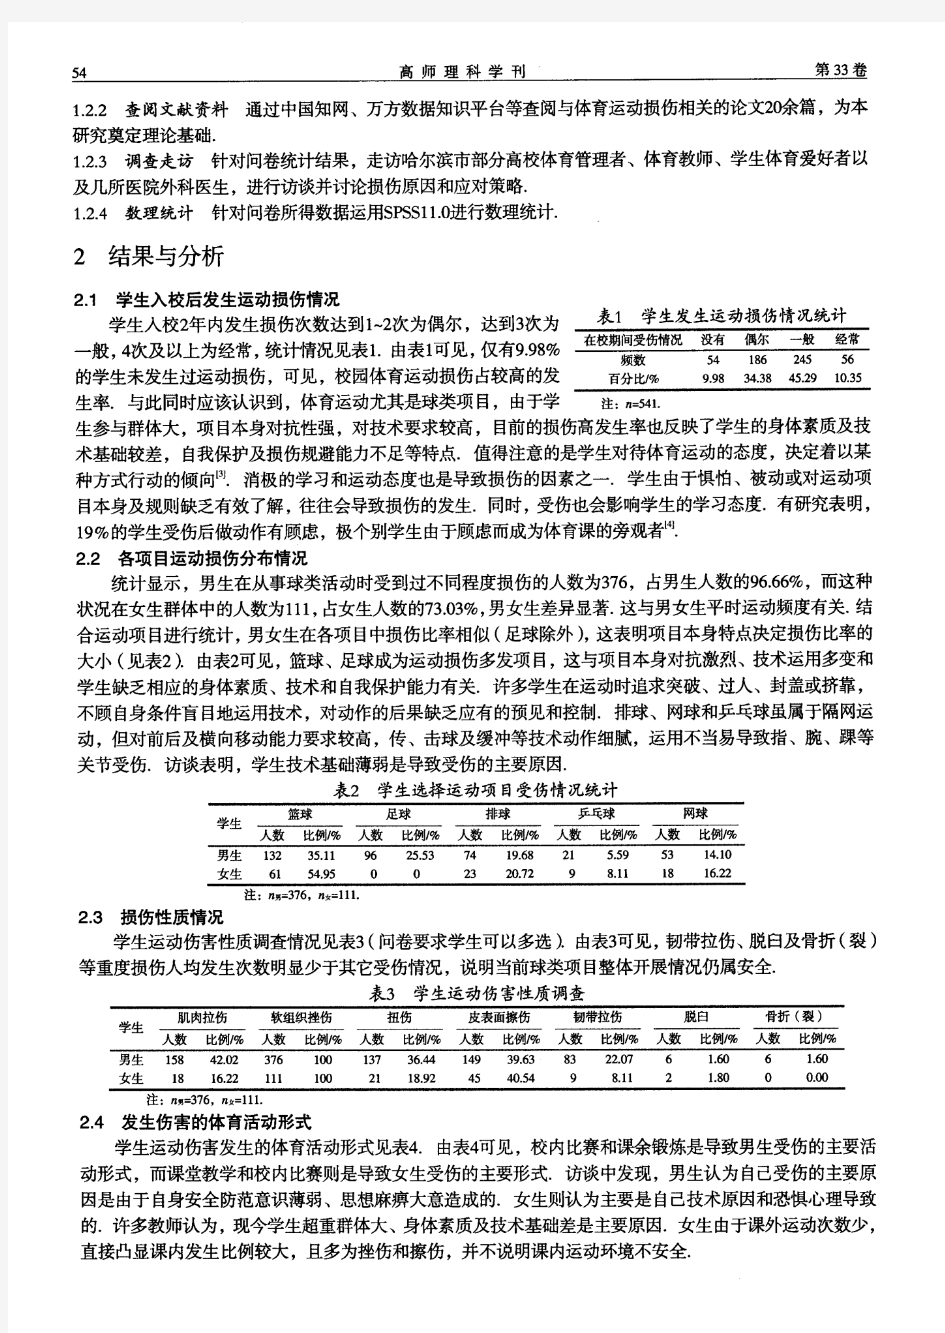 黑龙江省高校大学生球类项目运动损伤现状研究